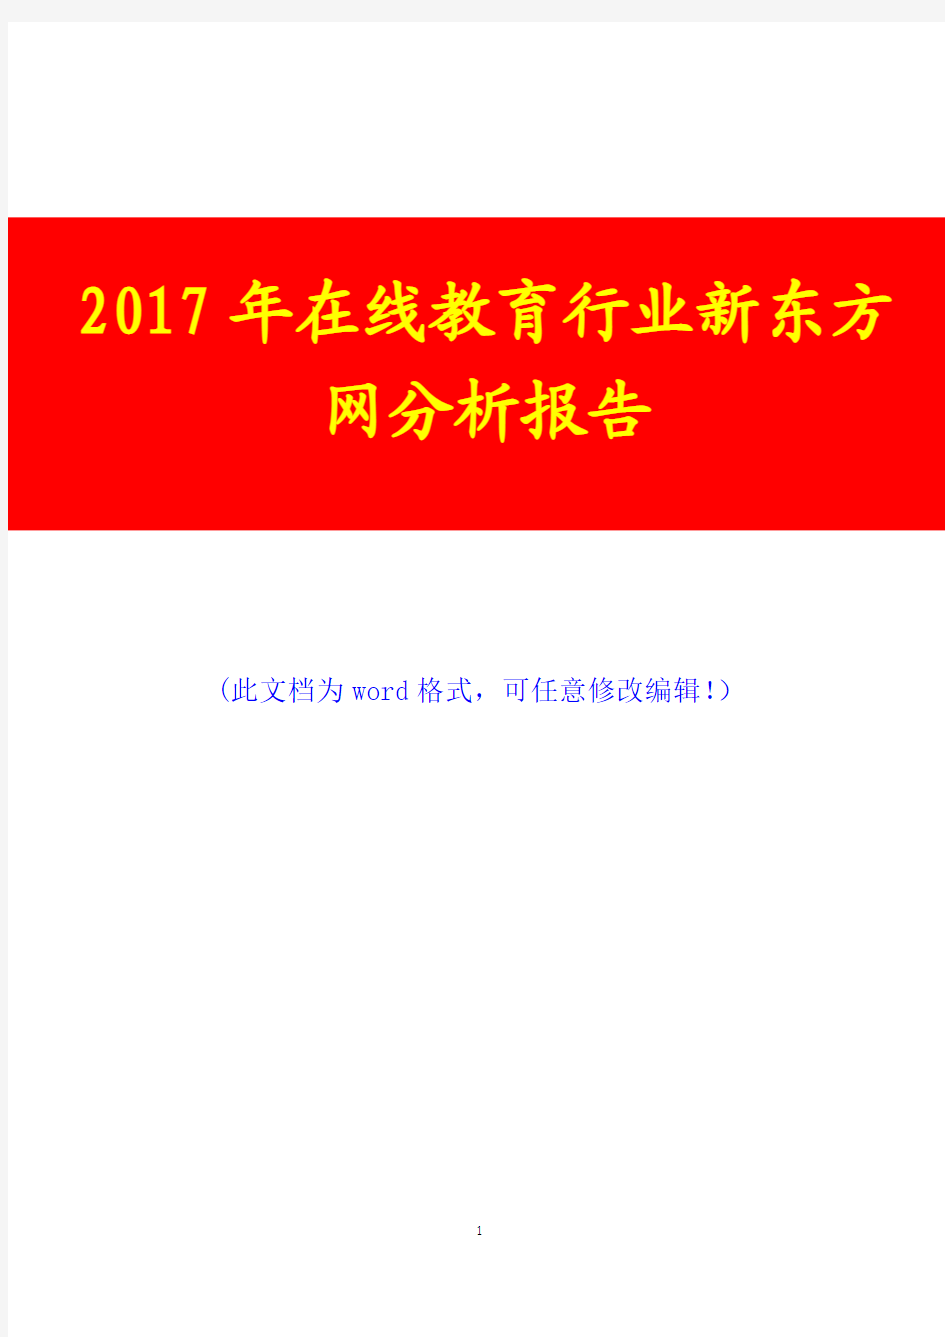 2017年在线教育行业新东方网调研咨询投资分析报告